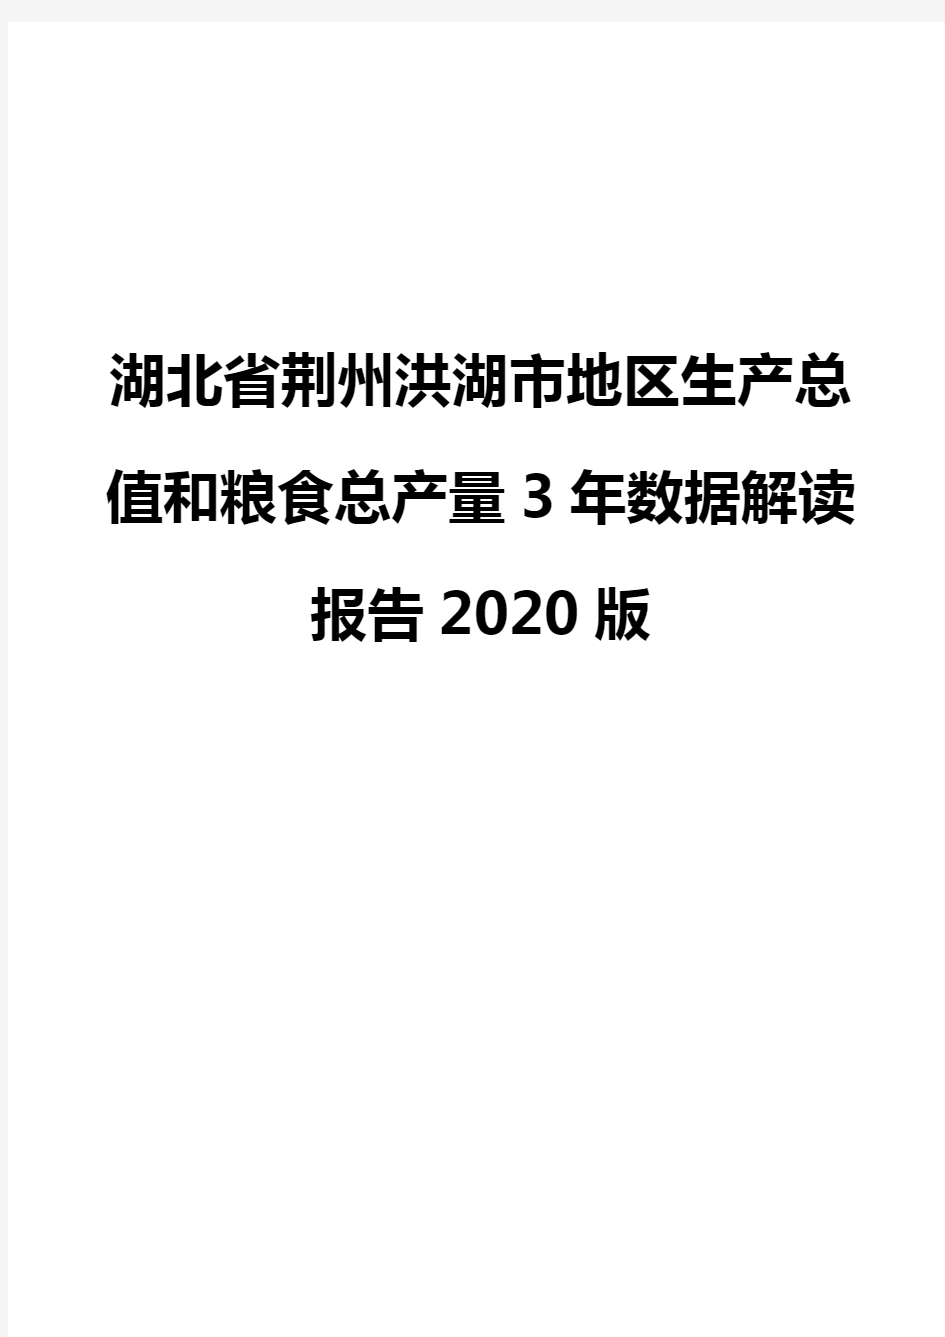 湖北省荆州洪湖市地区生产总值和粮食总产量3年数据解读报告2020版